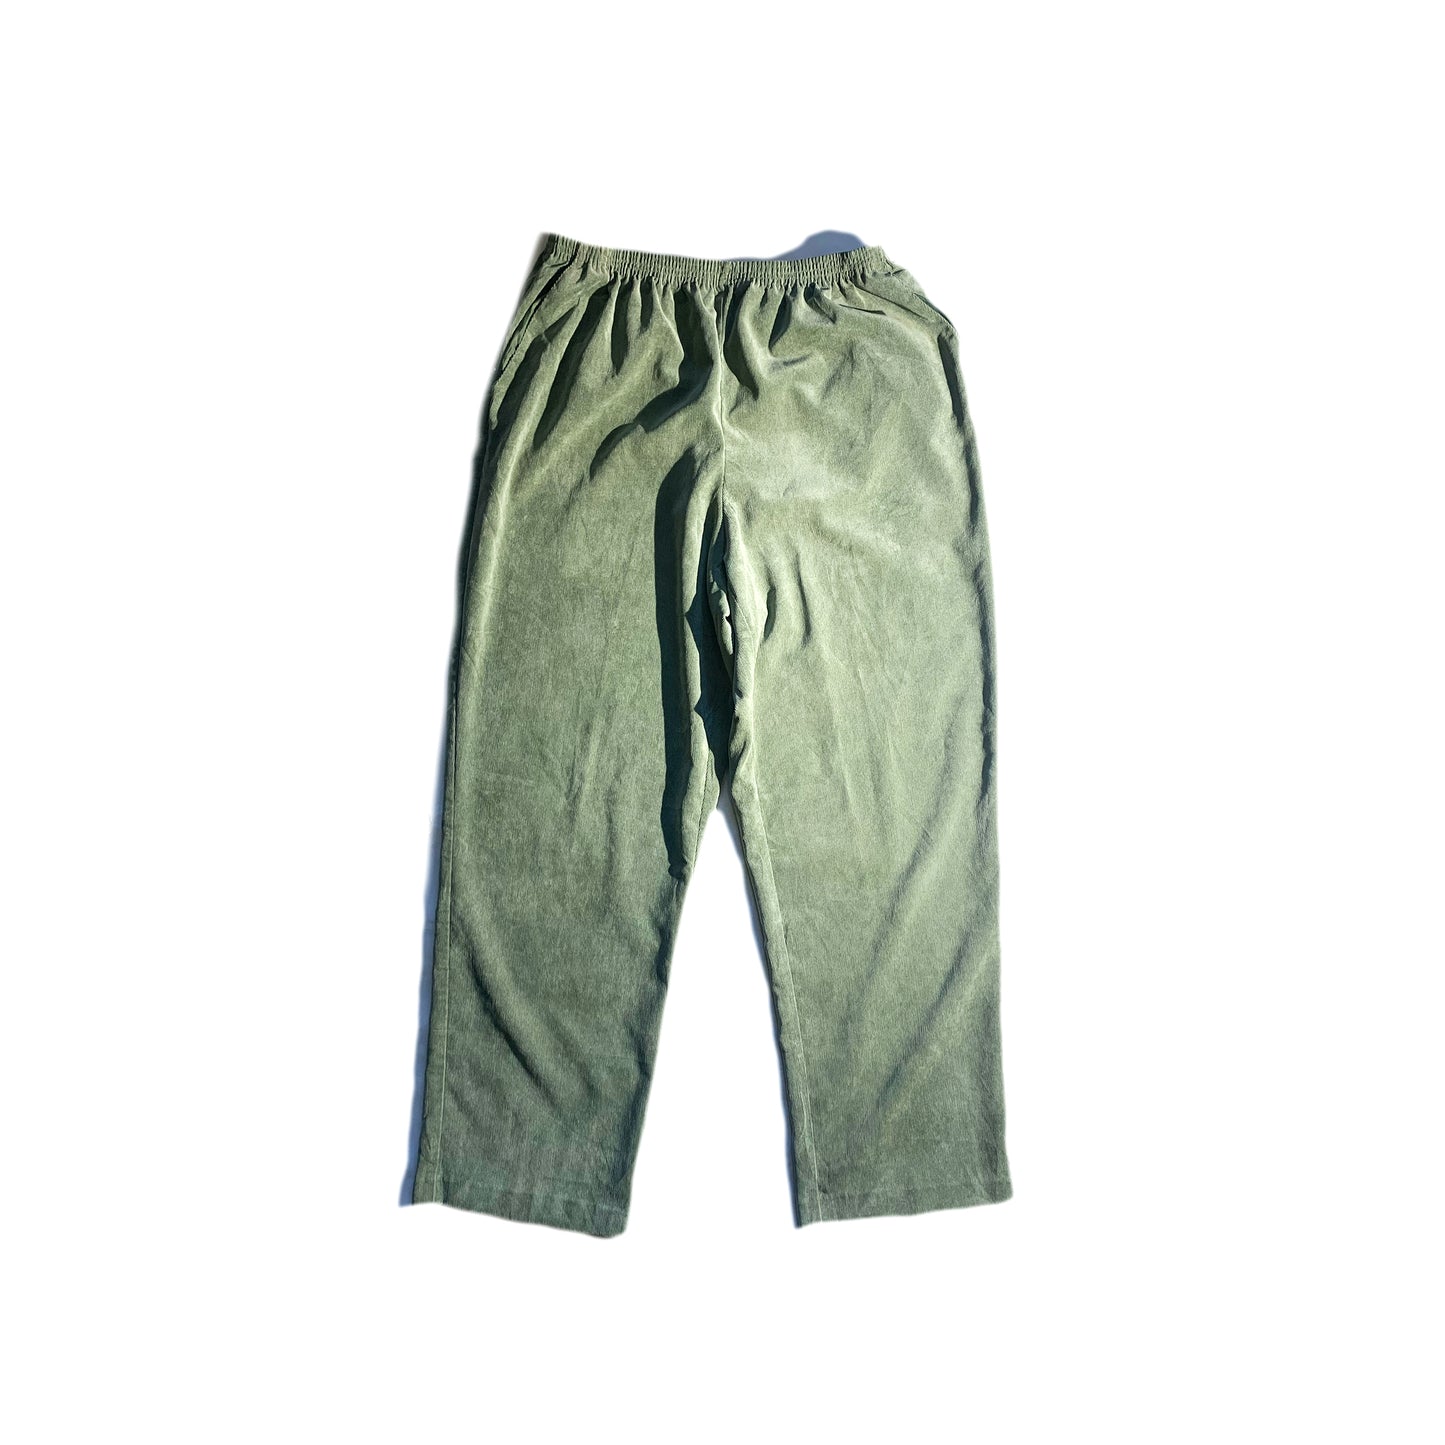 Vintage Elastic Corduroy Pants